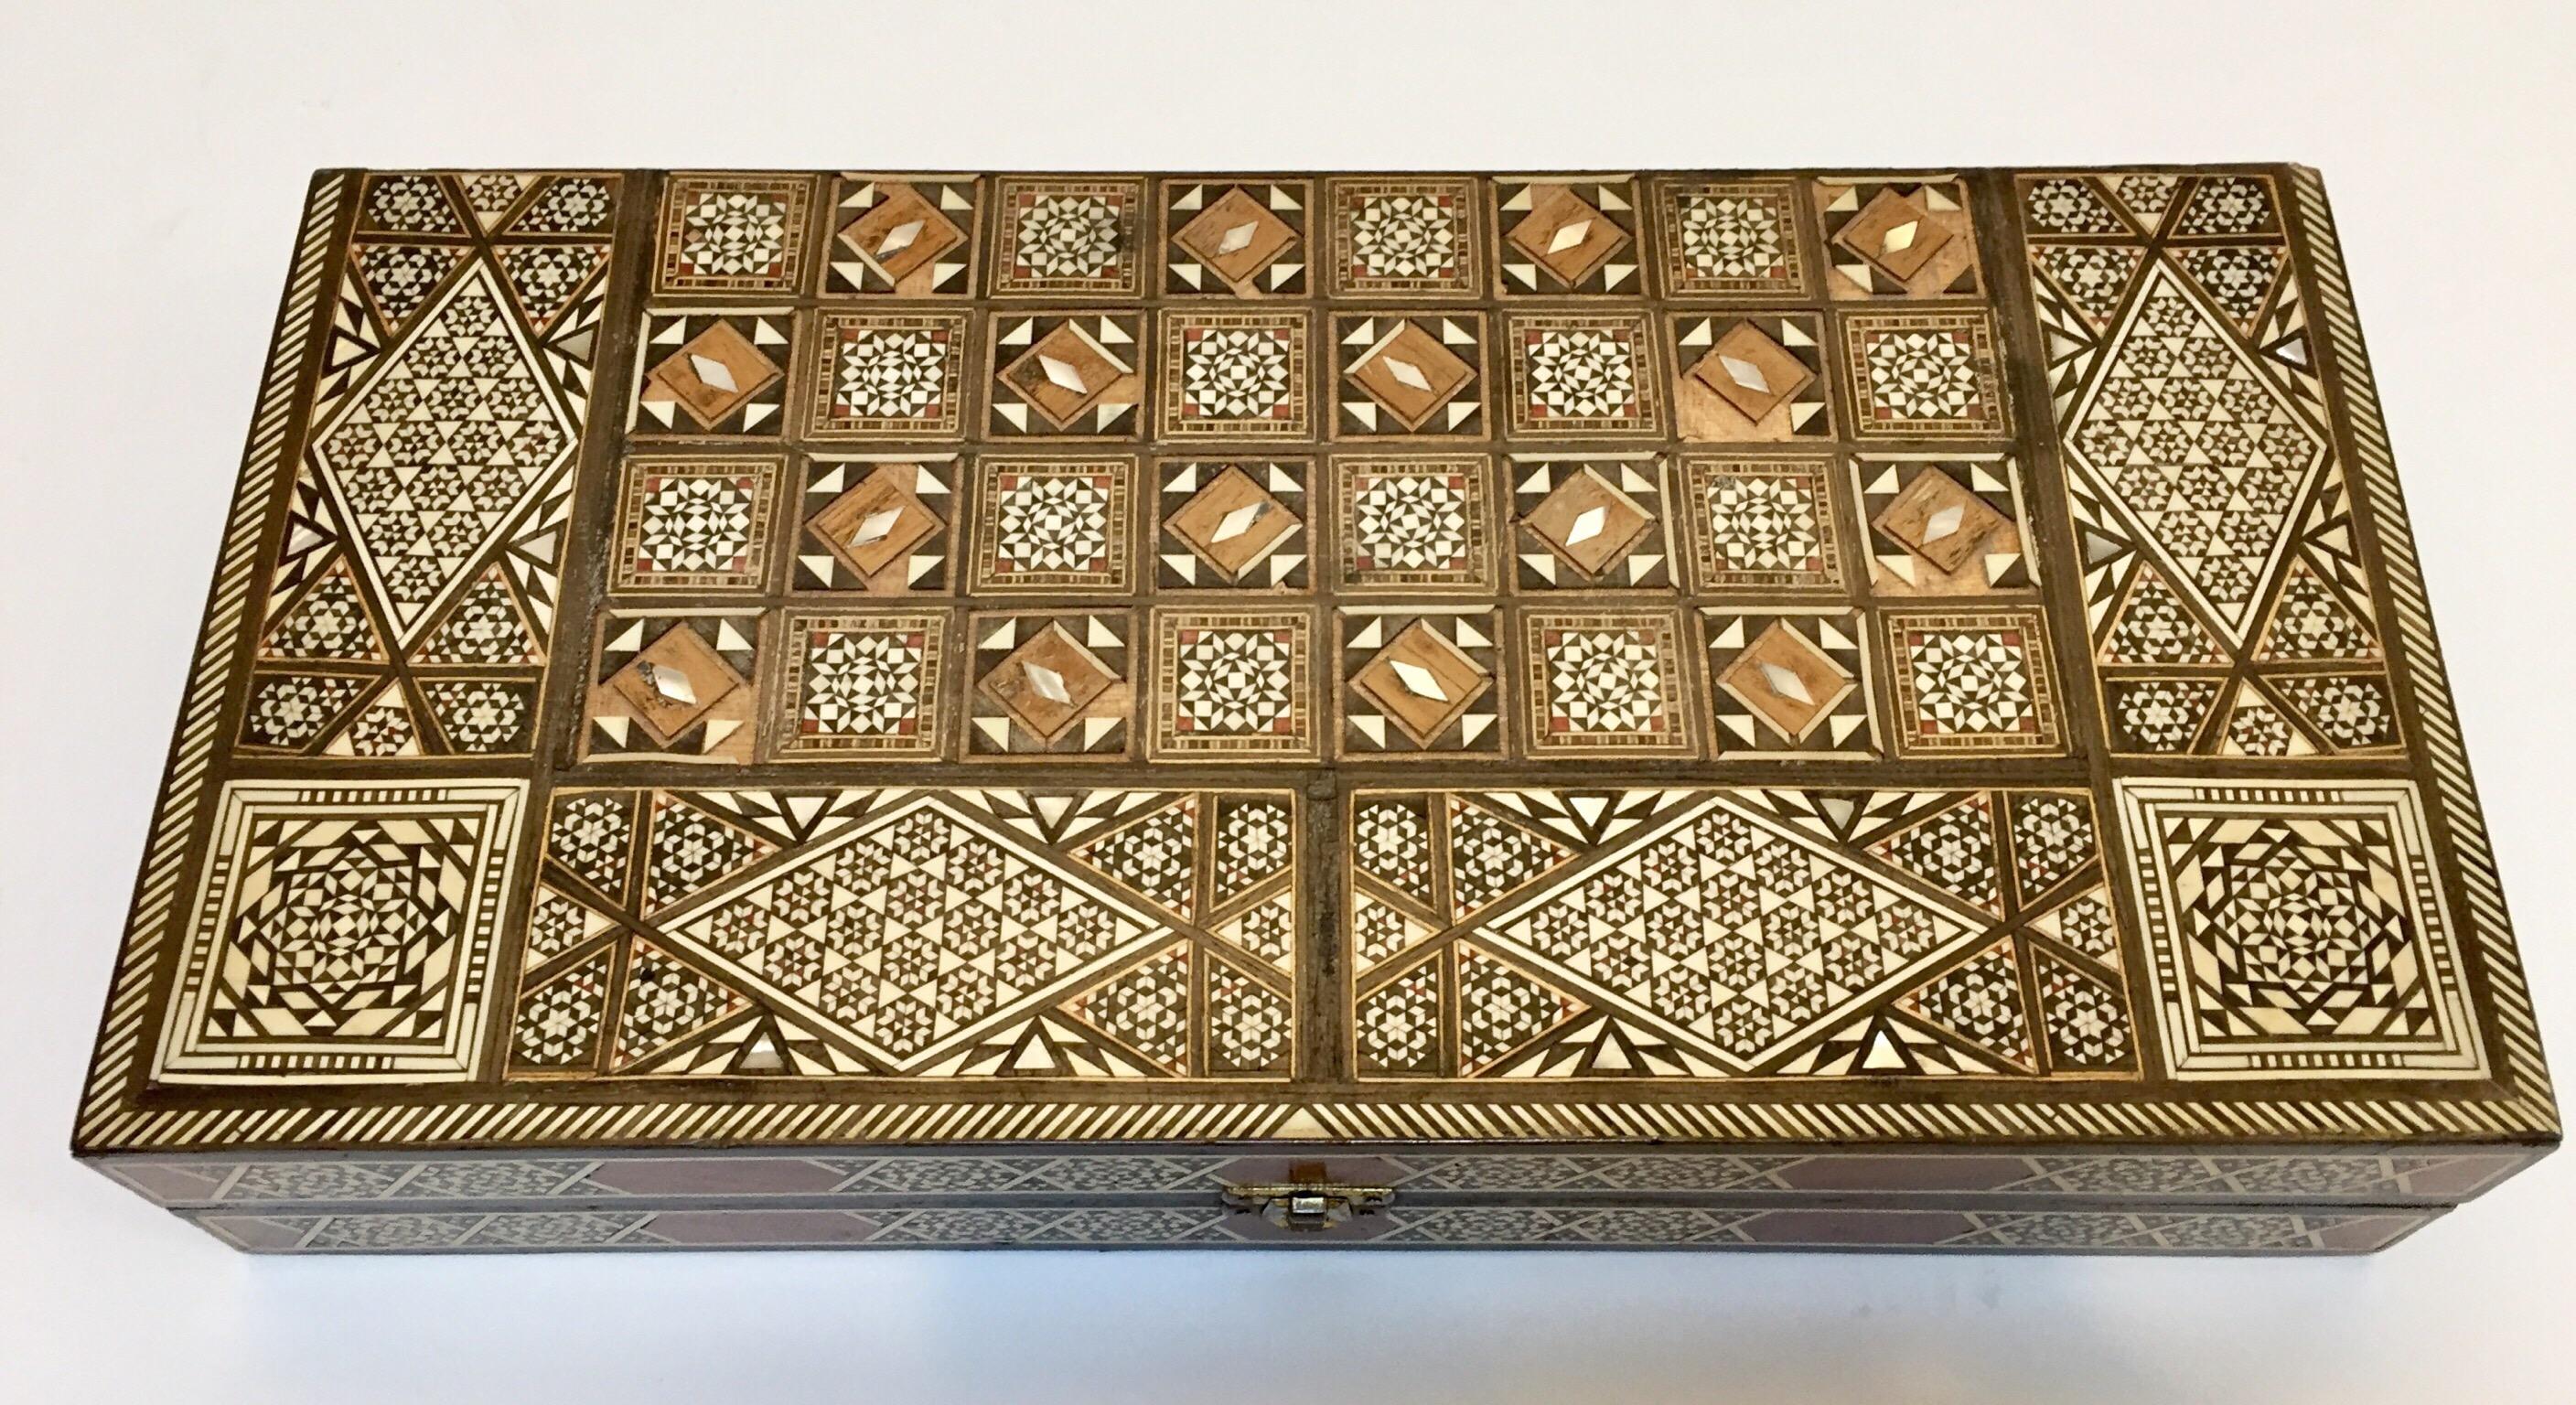 Mauresque Vieux grand jeu complet de backgammon et d'echecs en mosaique incrustee syrienne